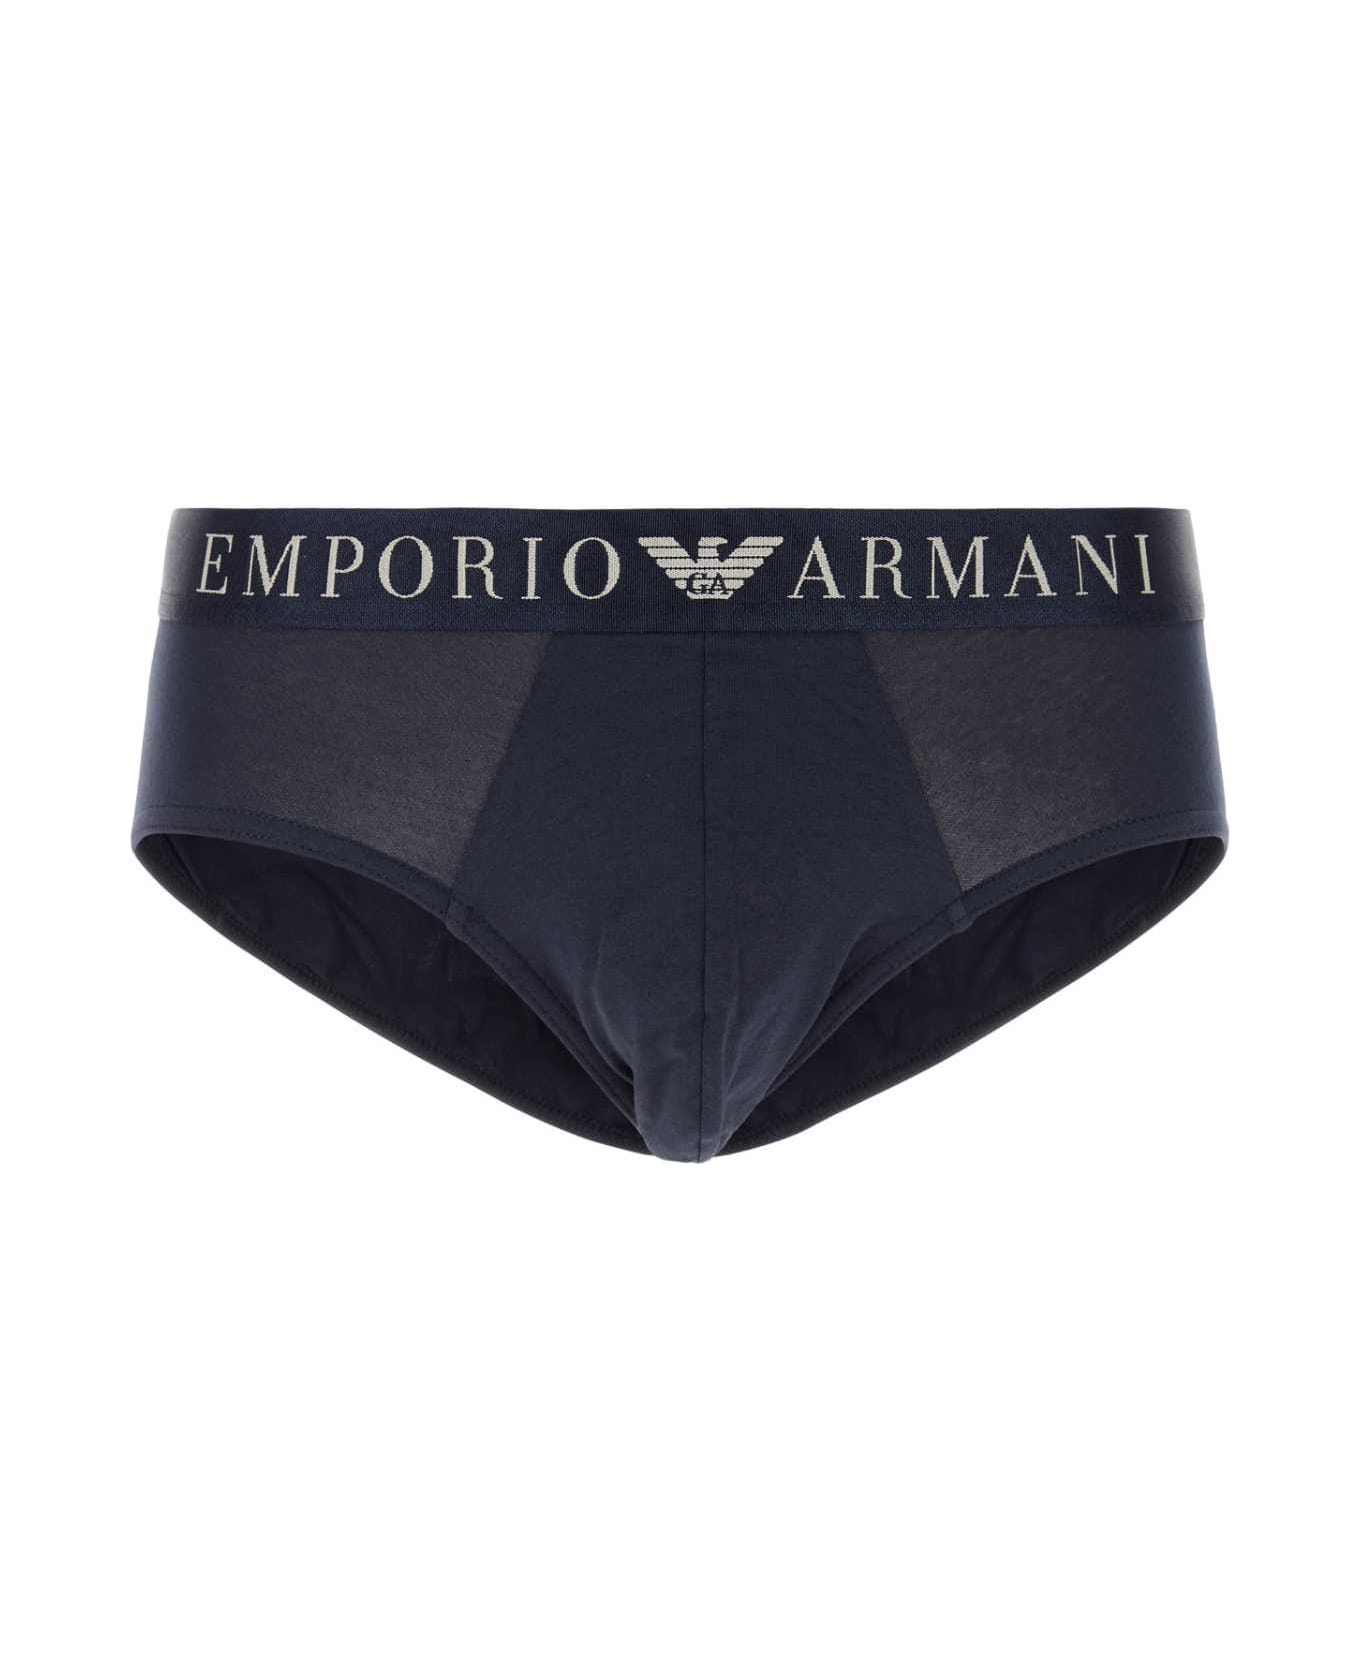 Emporio Armani Midnight Blue Stretch Cotton Brief - 00135